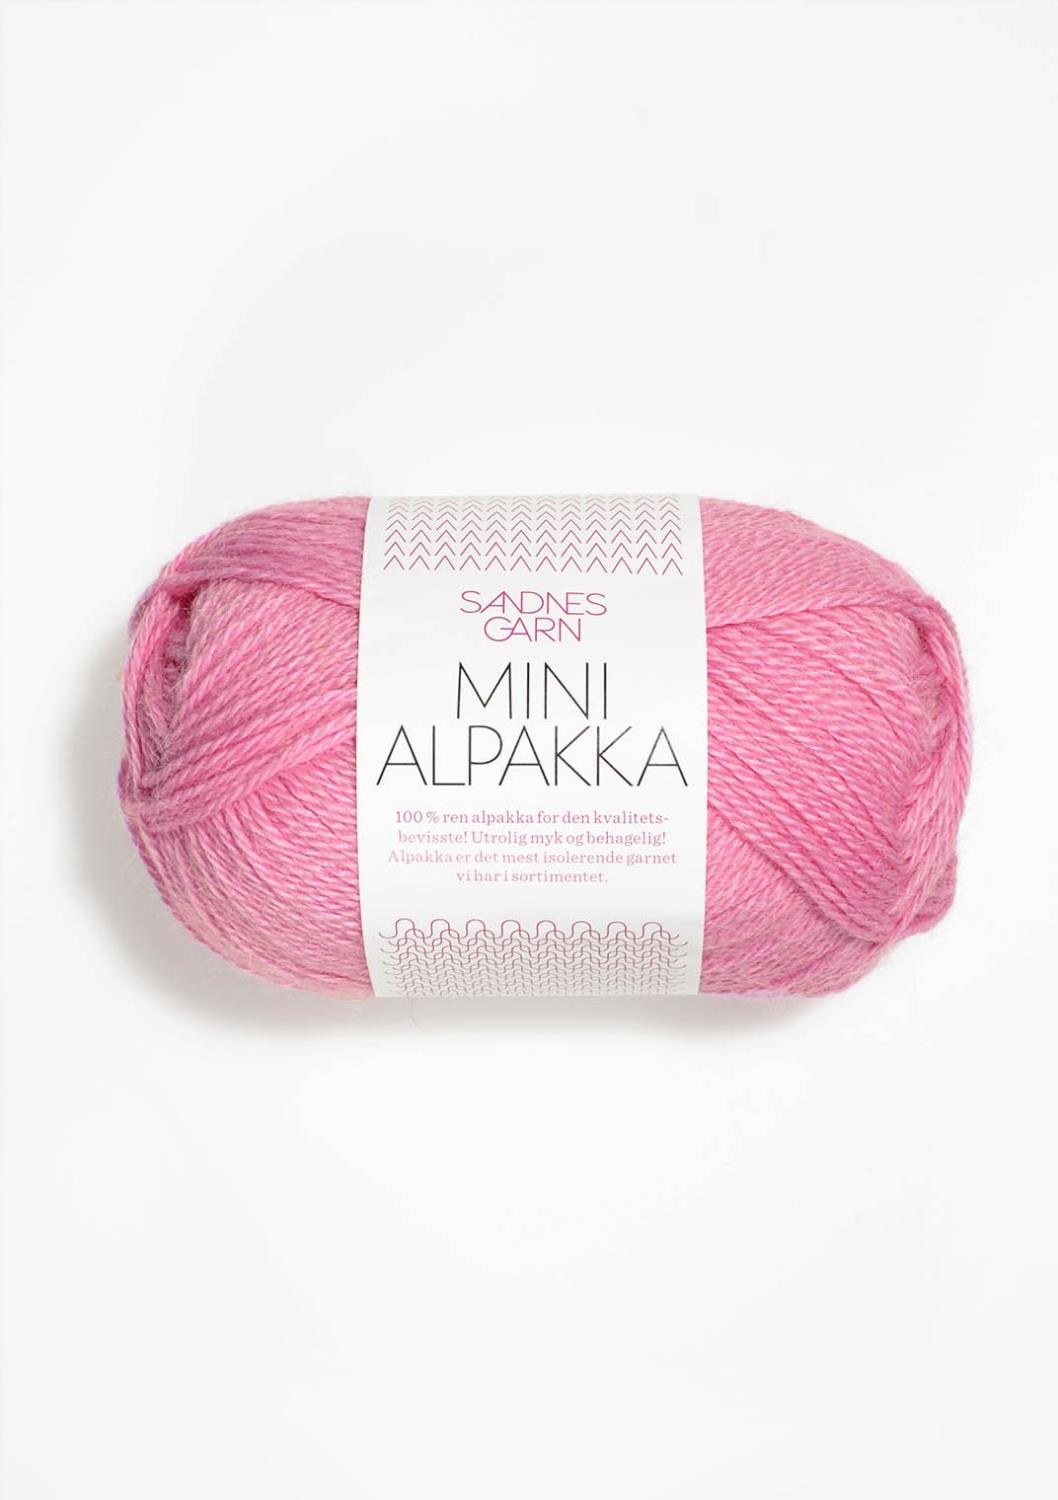 Mini Alpakka Sandnes 4614 - Rosa